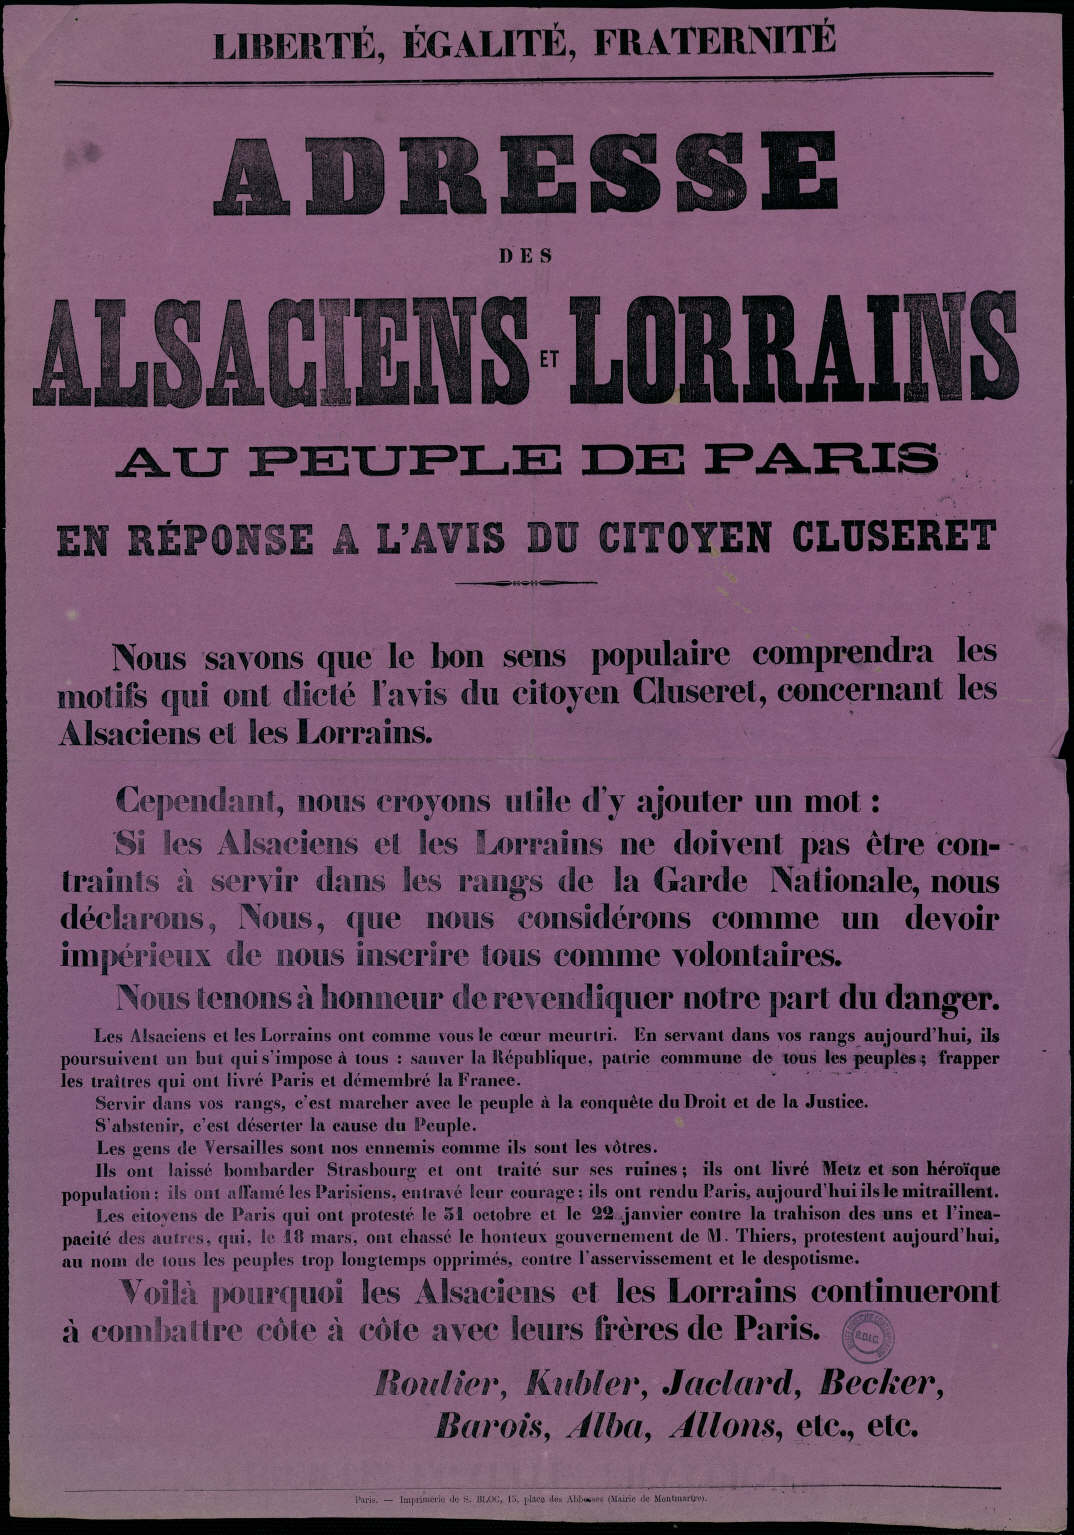 Affiche de la Commune de Paris 1871 - Adresse des Alsaciens-Lorrains aux Peuple de Paris en réponse à Cluseret (source : La Contemporaine – Nanterre / argonnaute.parisnanterre.fr)